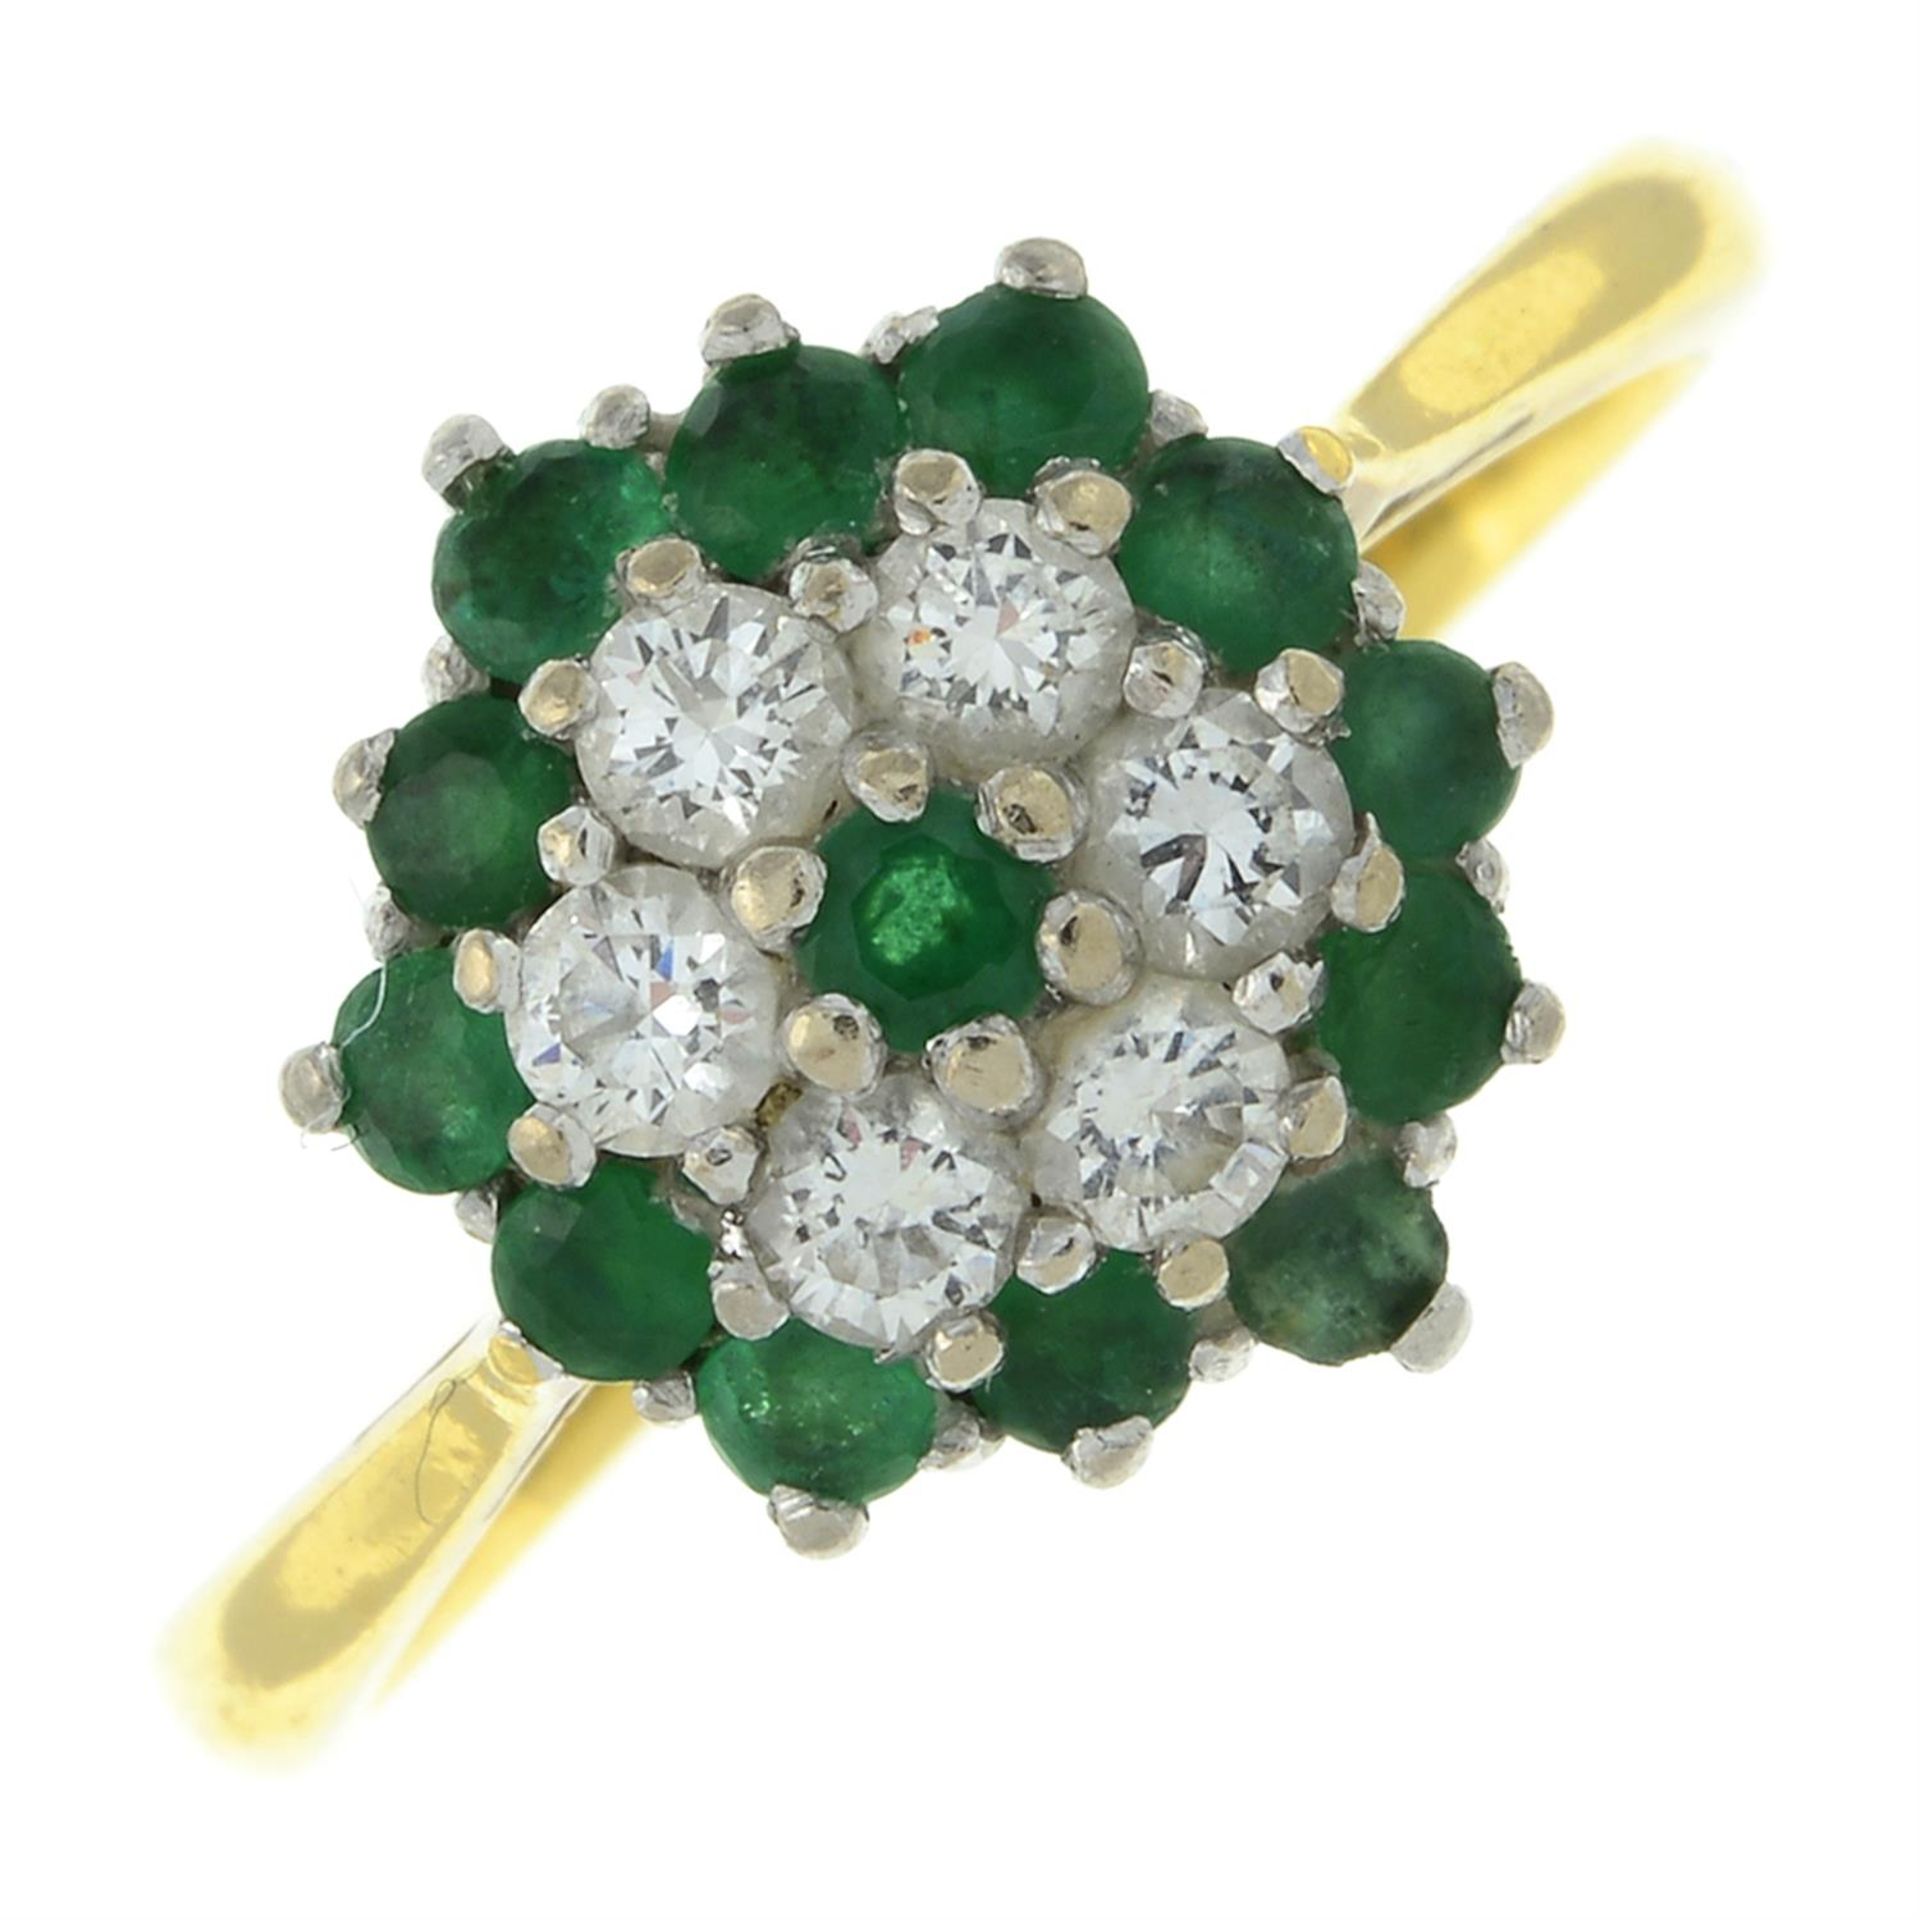 Gem floral cluster ring